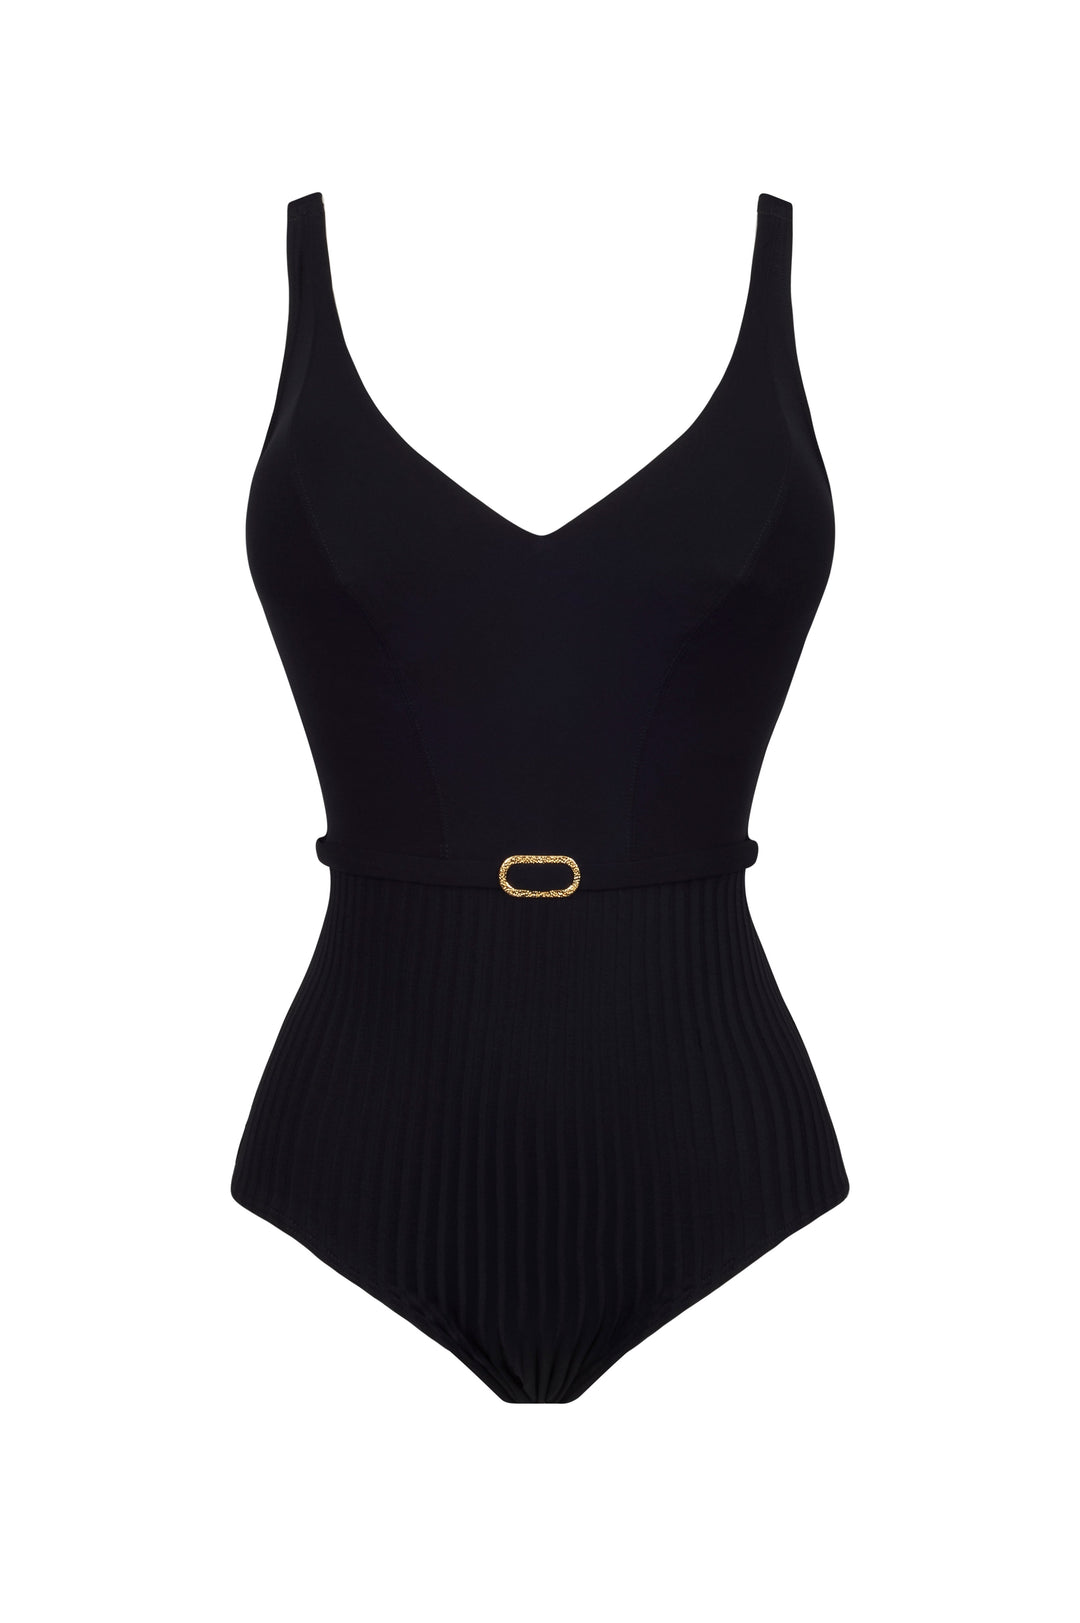 Empreinte - Iconic Купальник на косточках с V-образным вырезом Черный купальник с глубоким вырезом Empreinte Swimwear